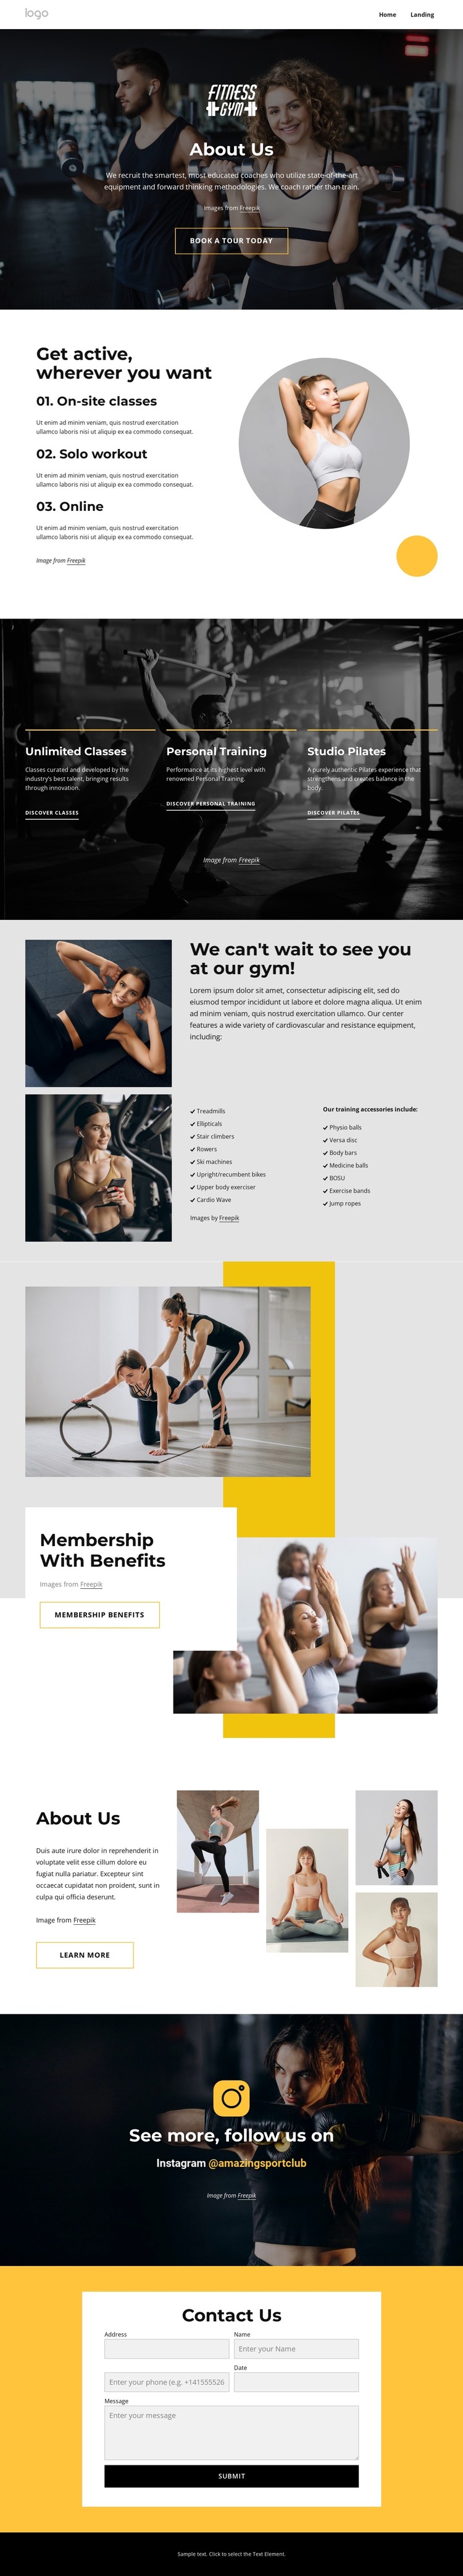 Sport and wellness center HTML Template